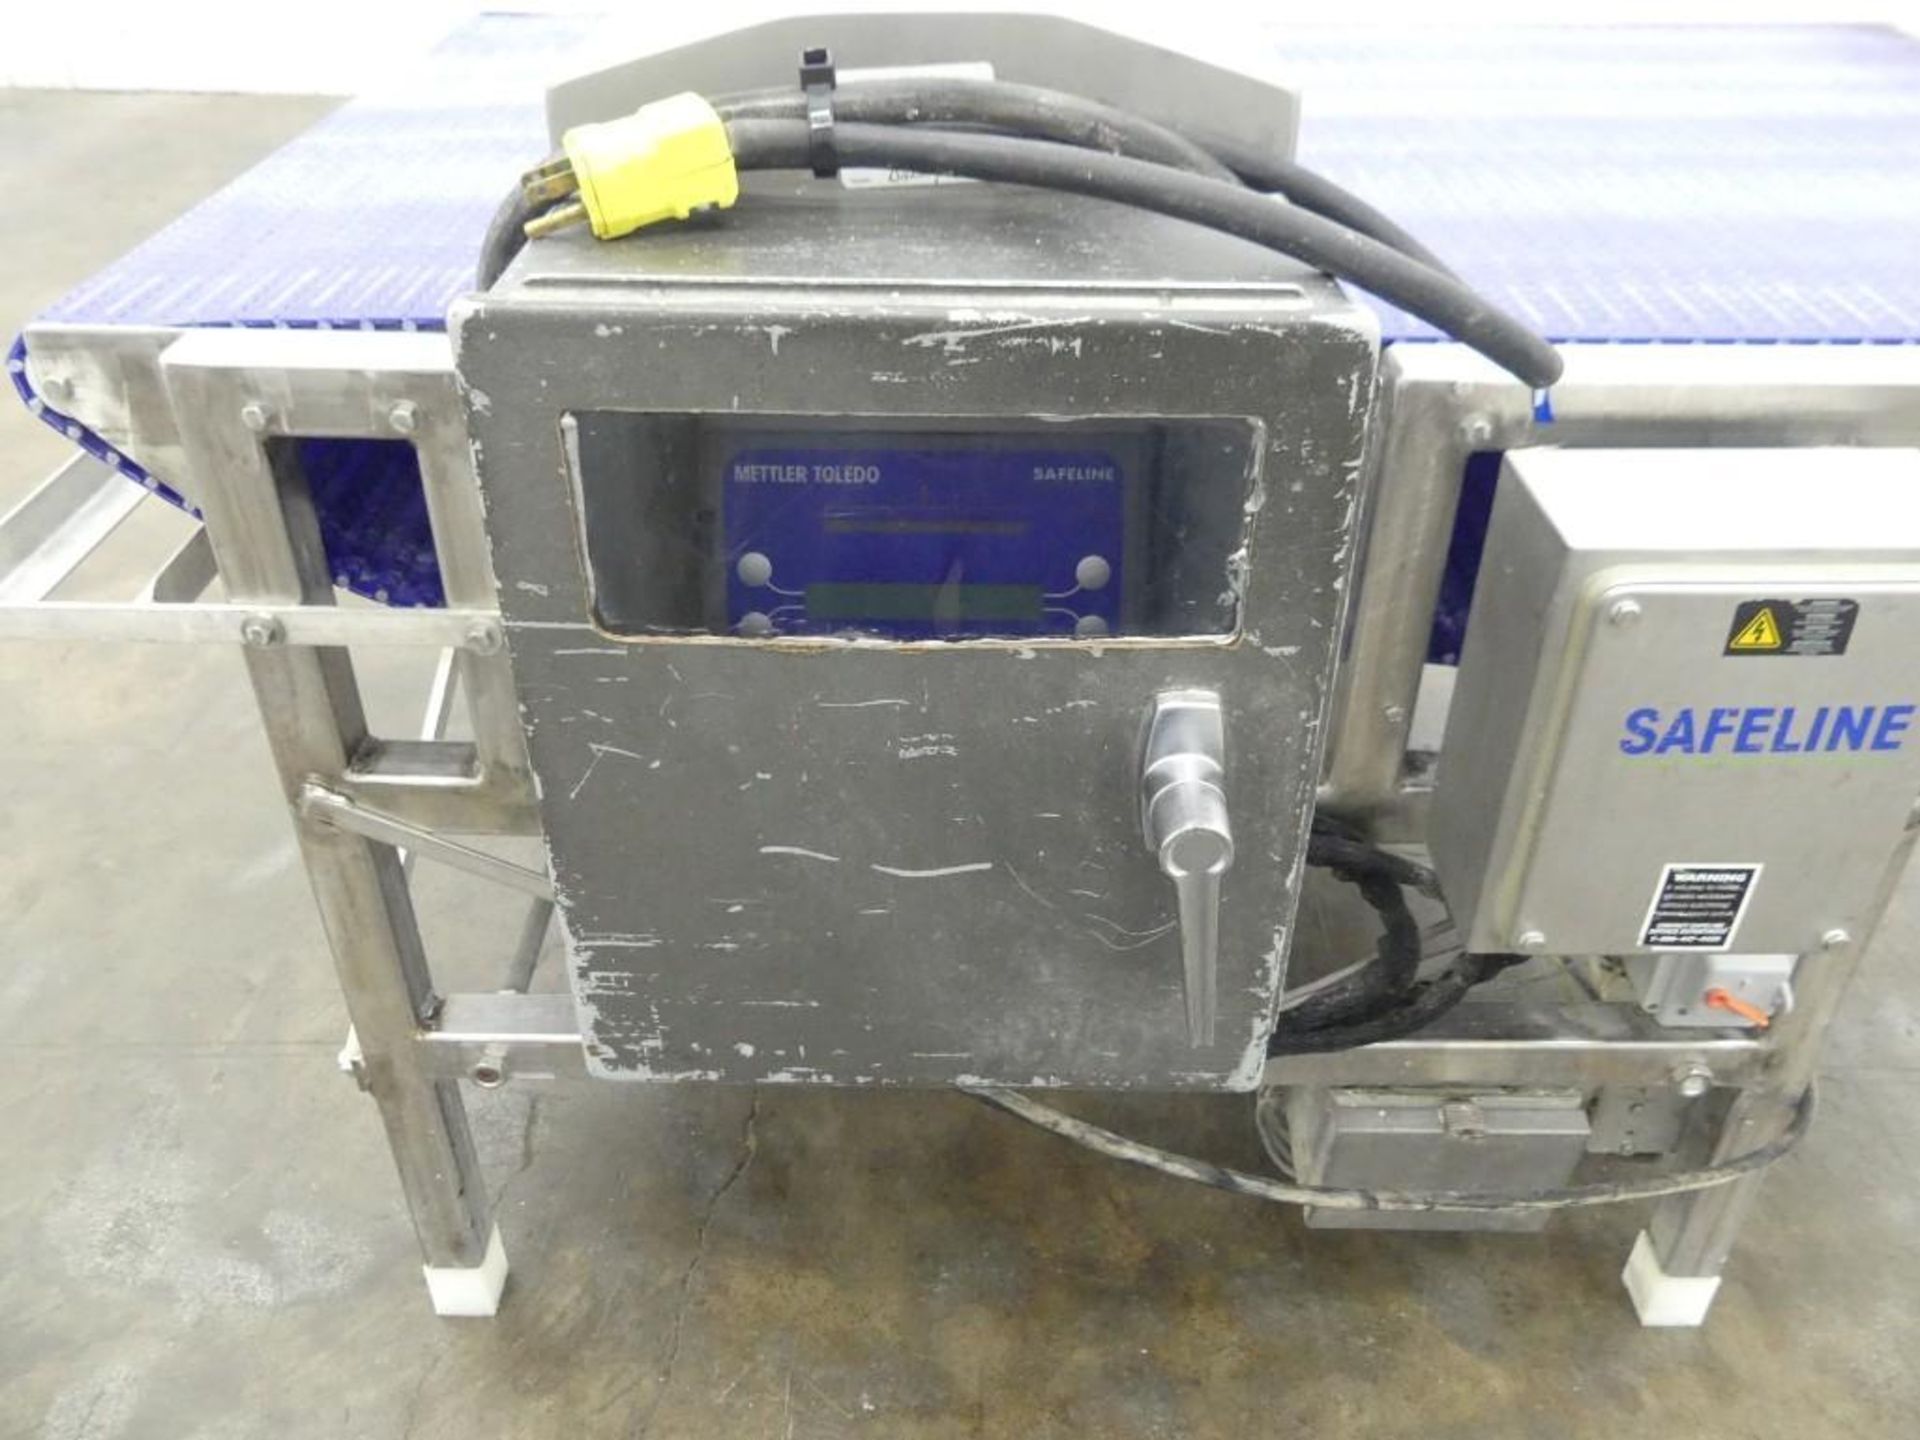 Safeline PowerPhasePlus Stainless Steel Metal Detector - Image 20 of 22